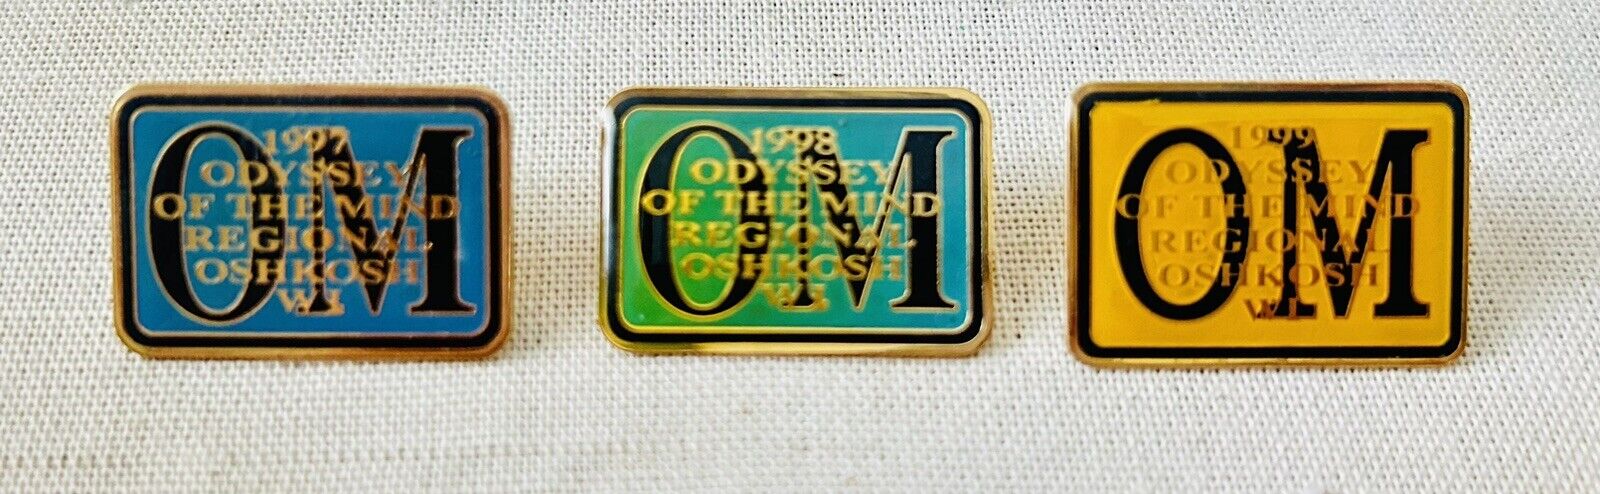 Vintage Odyssey Of The Mind Regional Oshkosh WI 1997-1999 Set Of 3 Pins